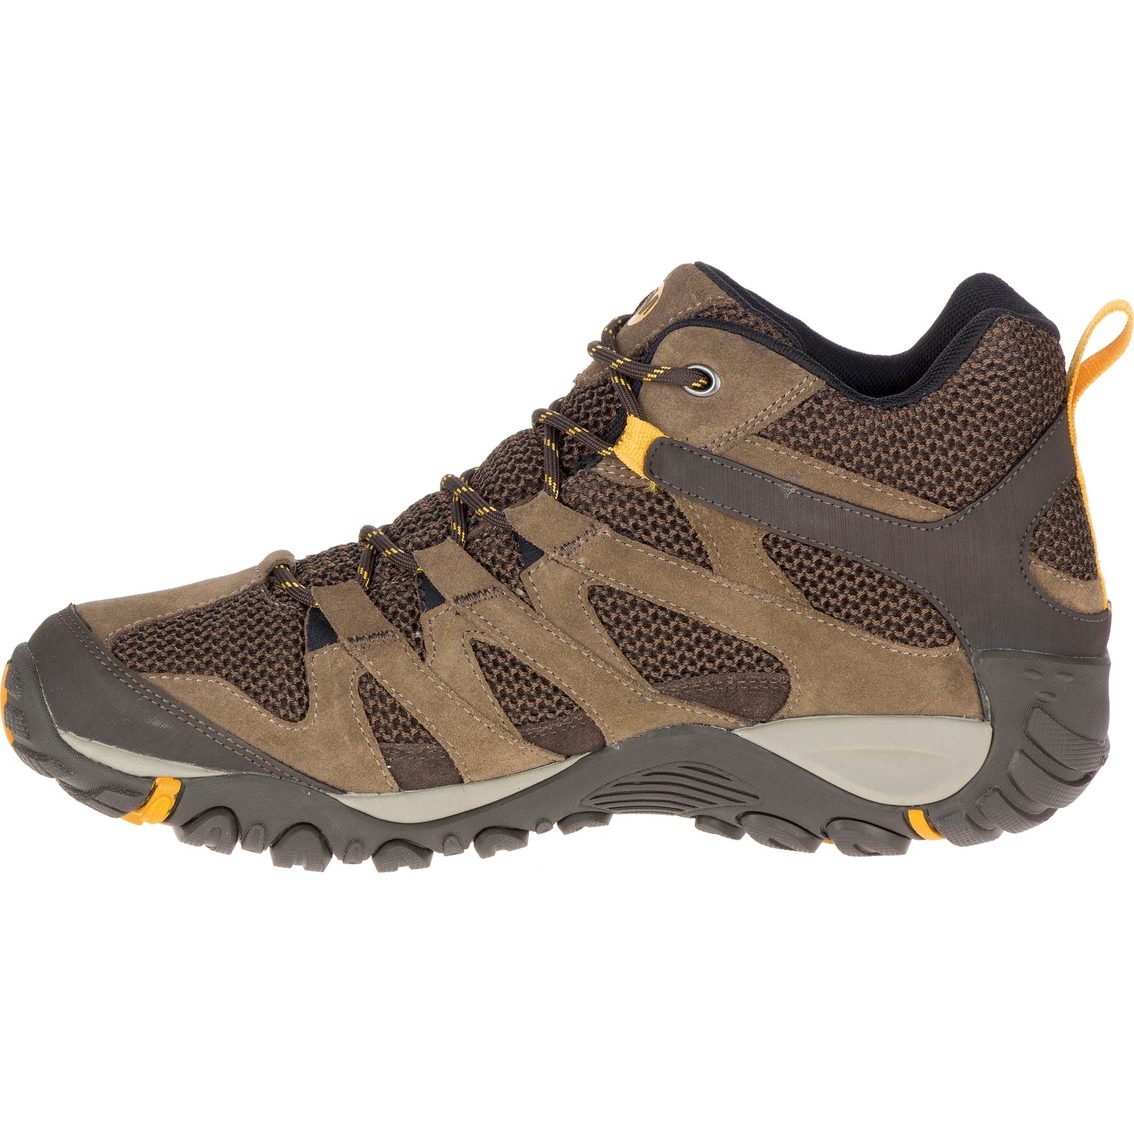 Merrell Men's Alverstone Mid Waterproof Hiking Boots | Gifts Under $100 ...